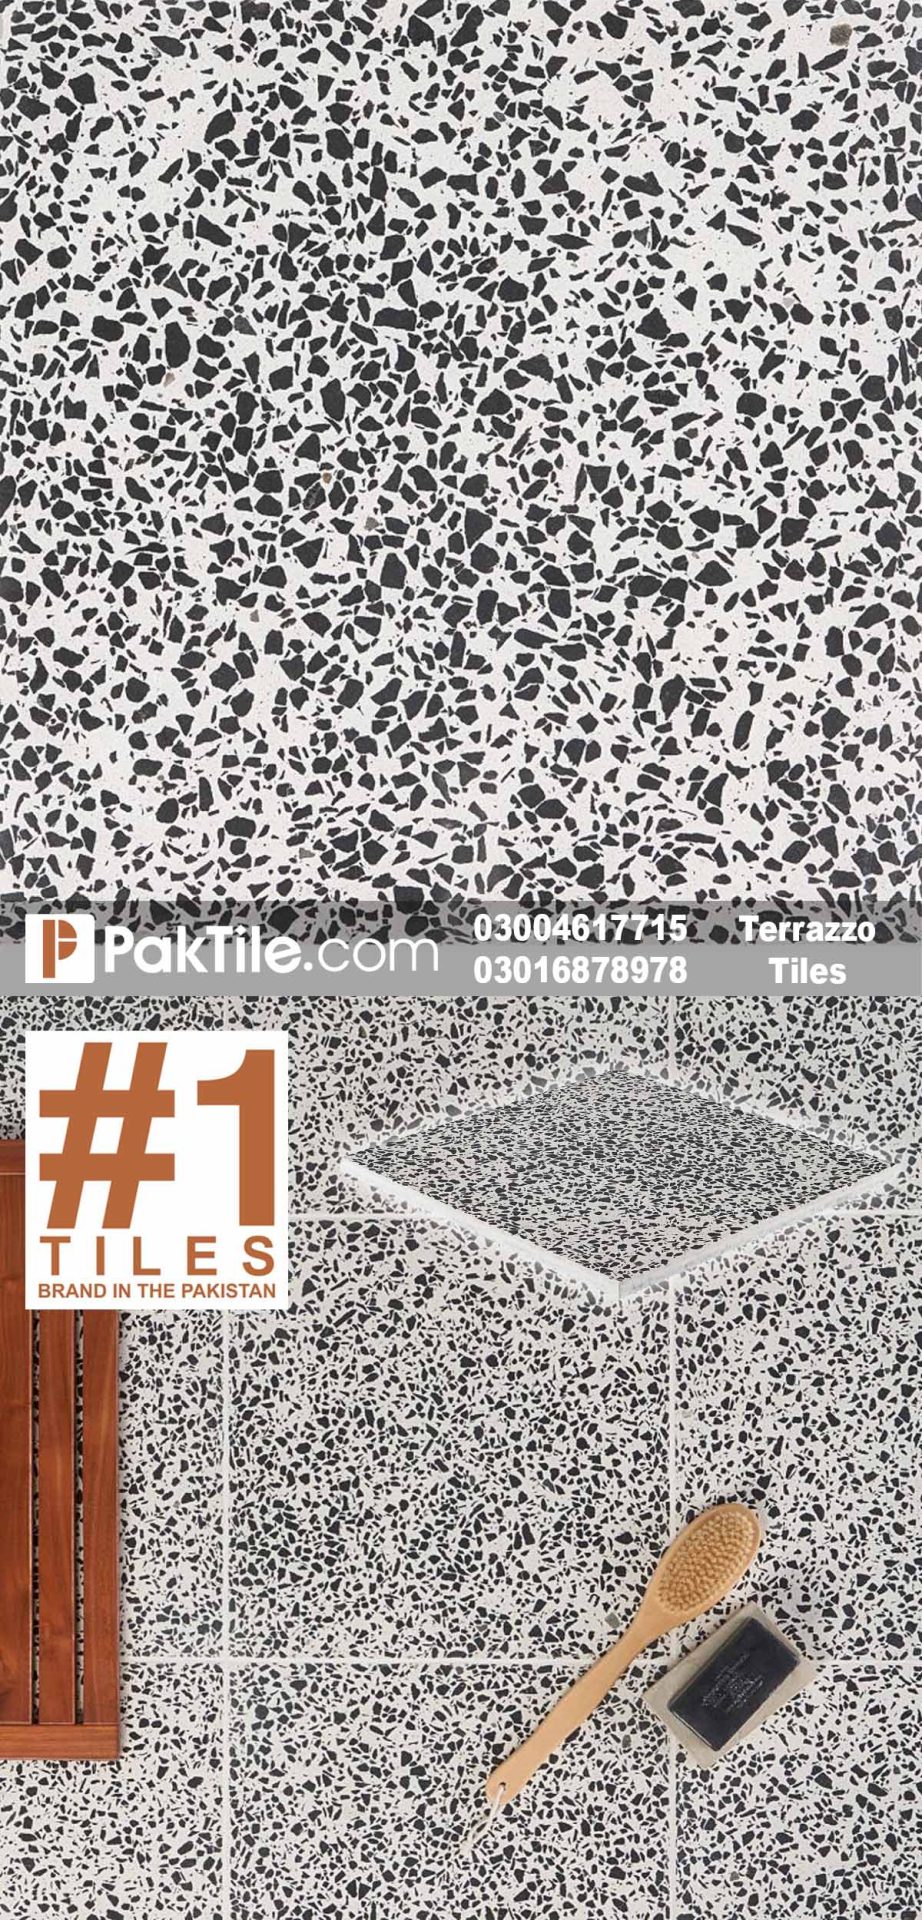 Pak clay terrazzo flooring tiles in pakistan